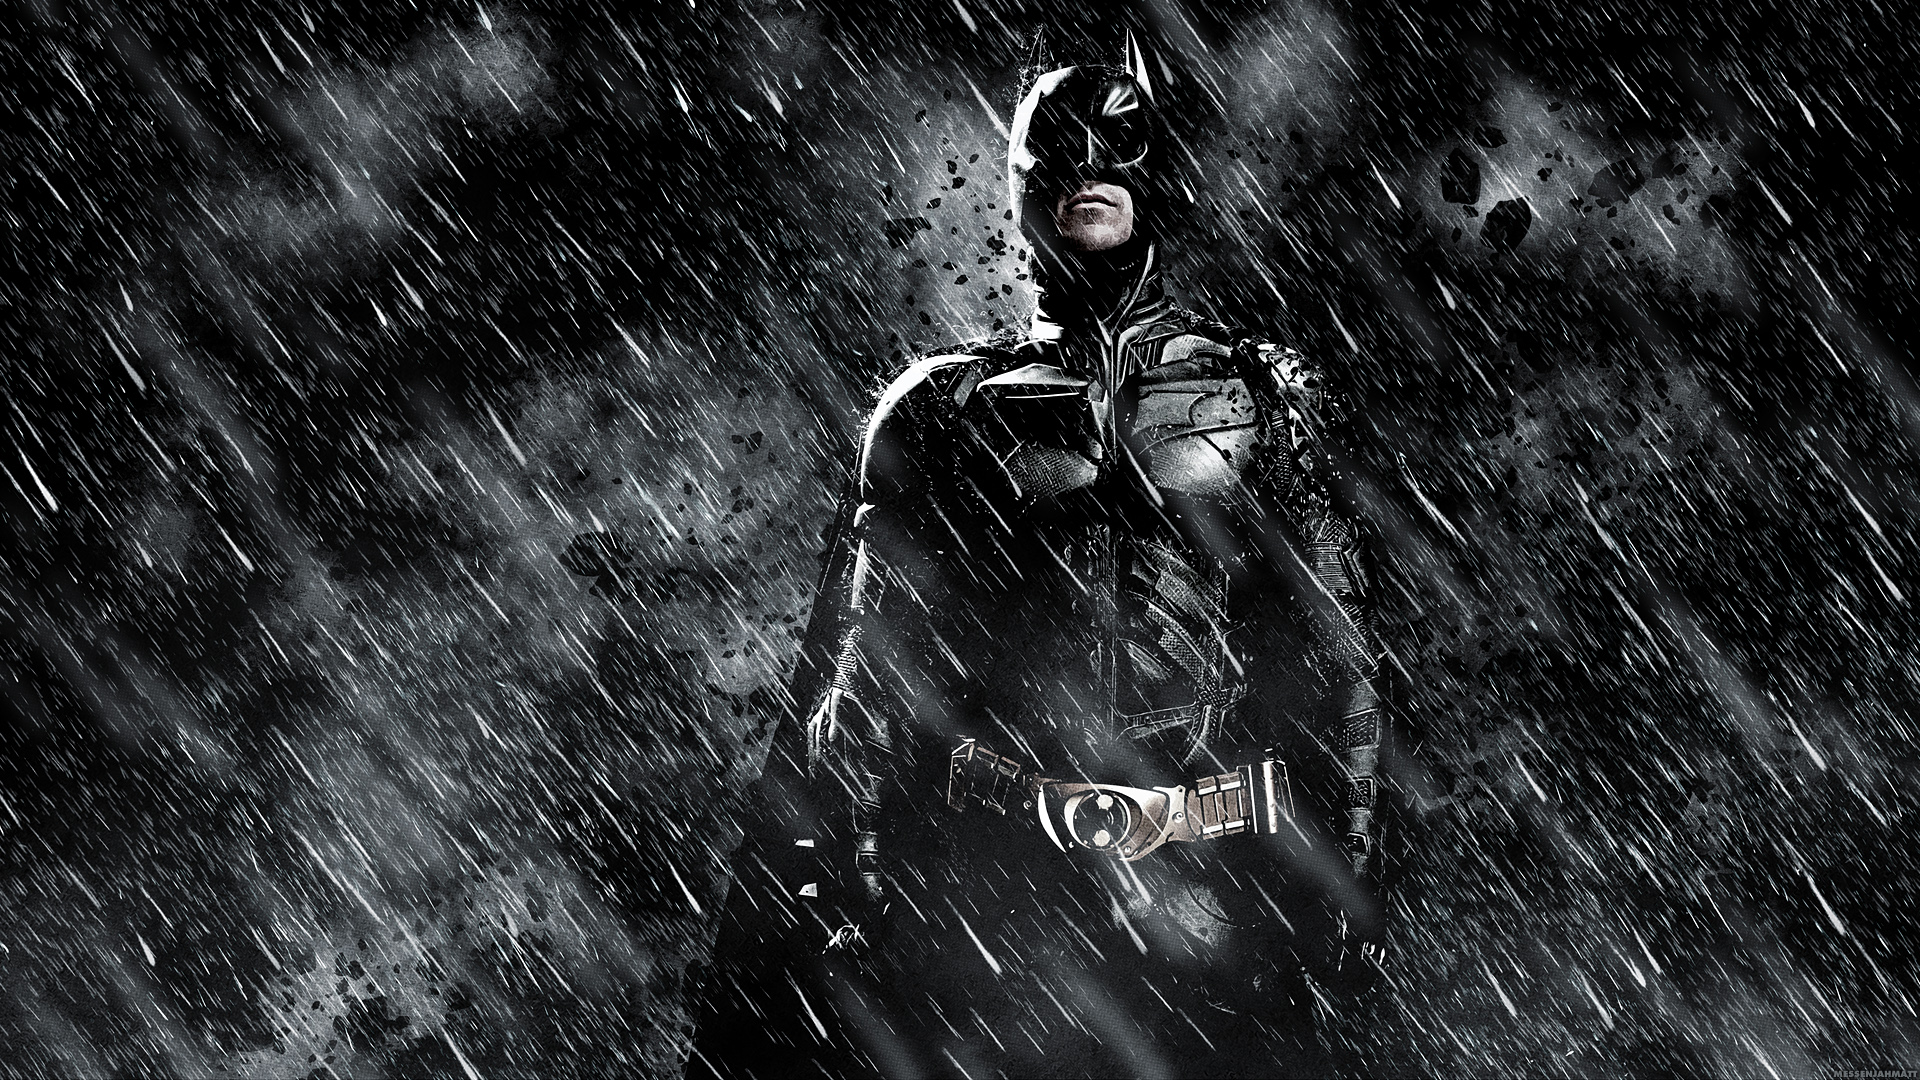 Batman In The Dark Knight Rises Wallpaper - Batman The Dark Knight 4k - HD Wallpaper 